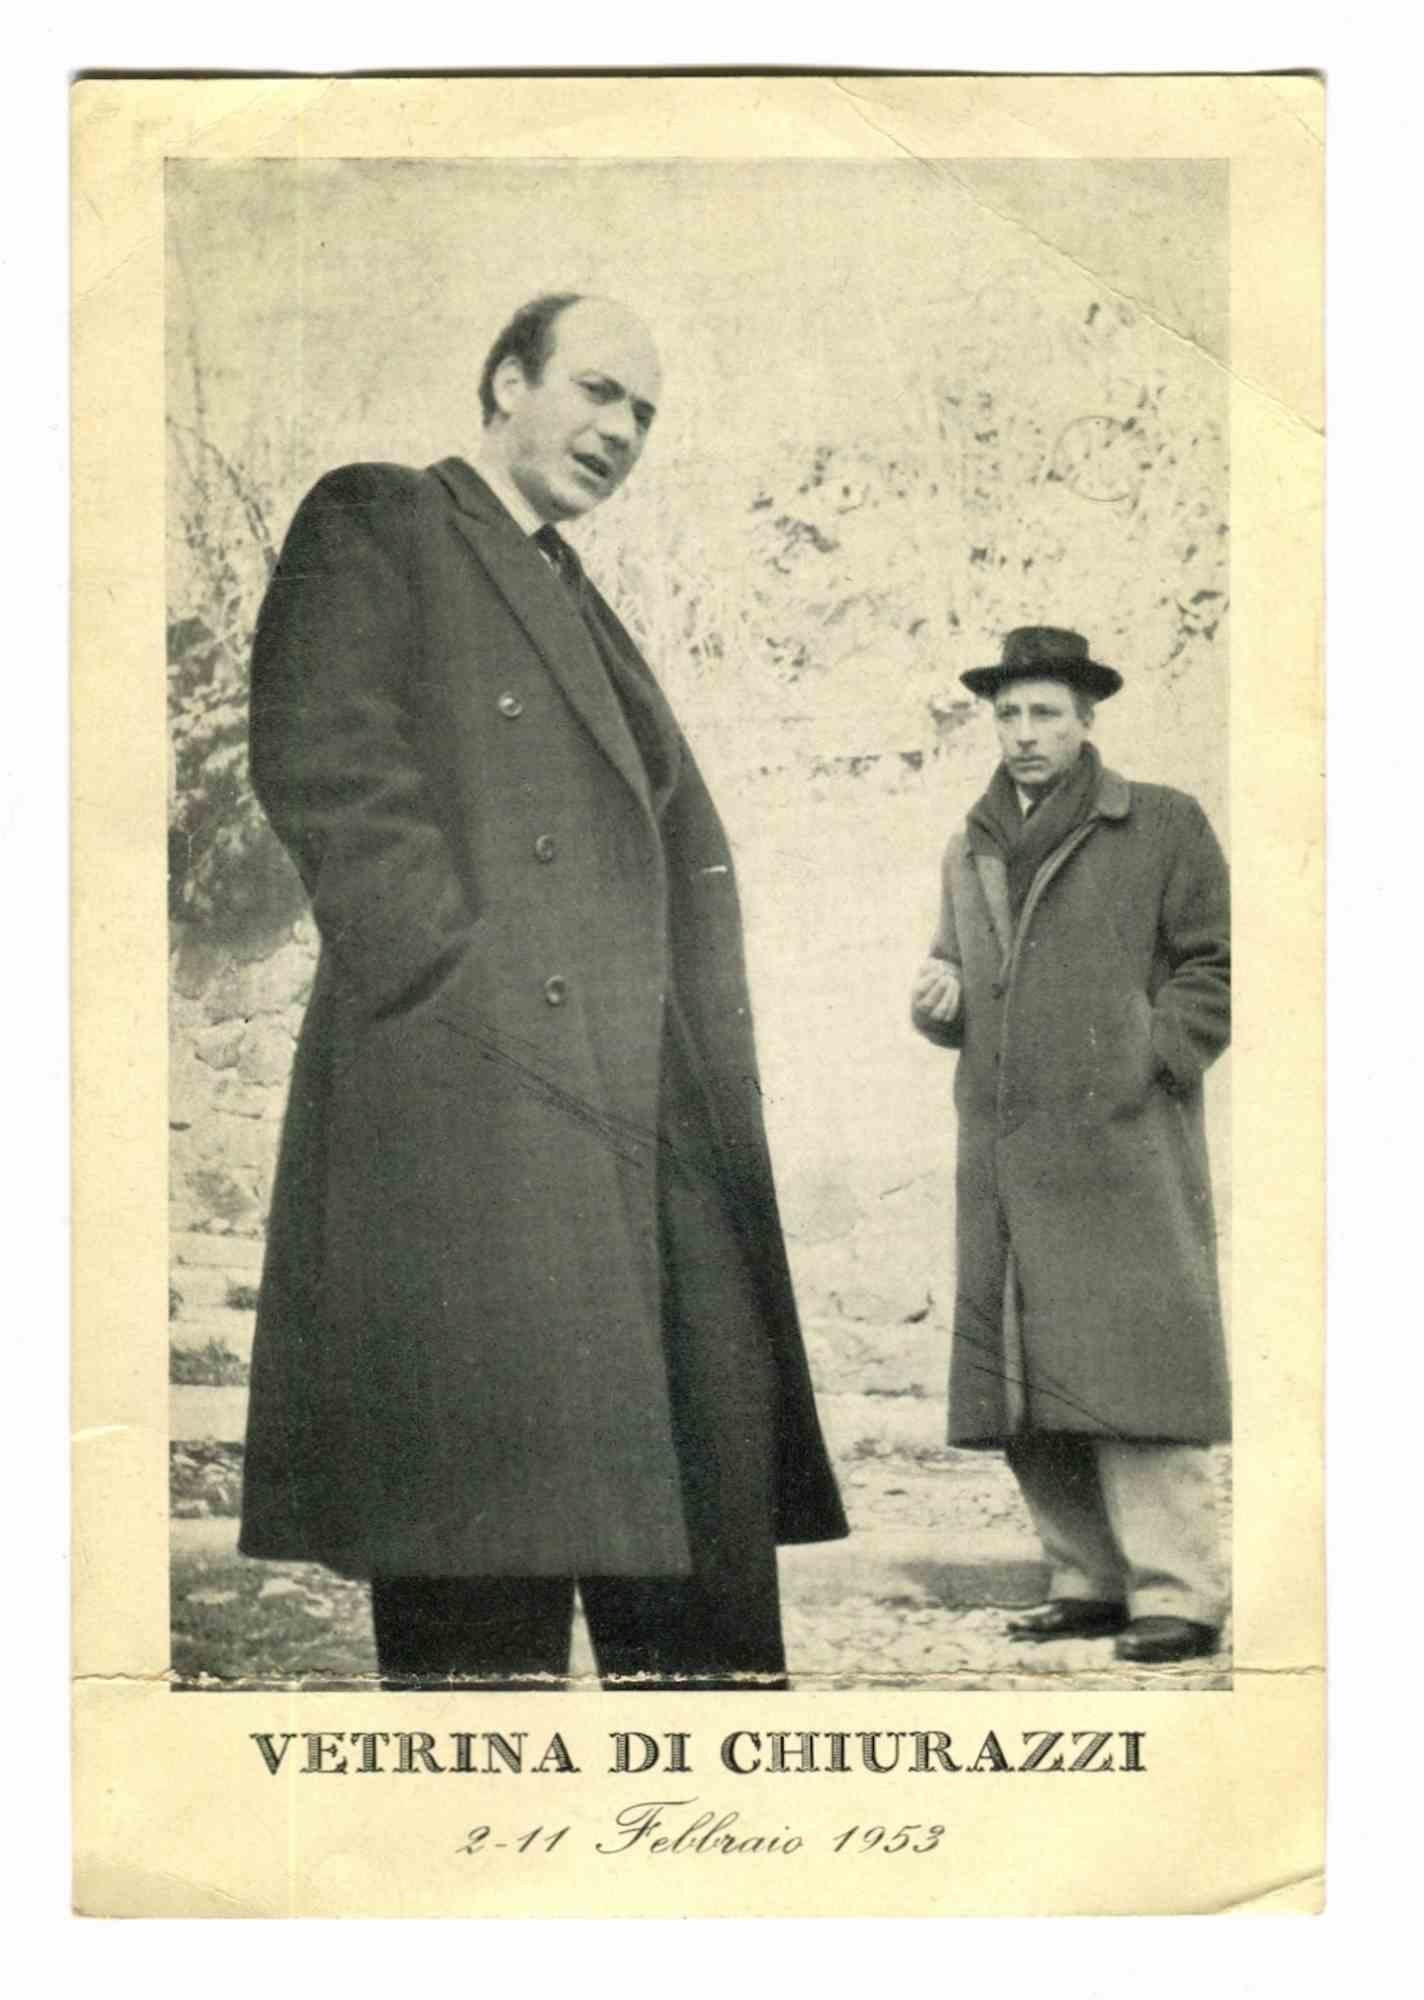 Unknown Portrait Photograph – Omiccioli und Villoresi bei Vetrina di Chiurazzi in Vetrina di Chiurazzi – Vintage-Foto – 1953